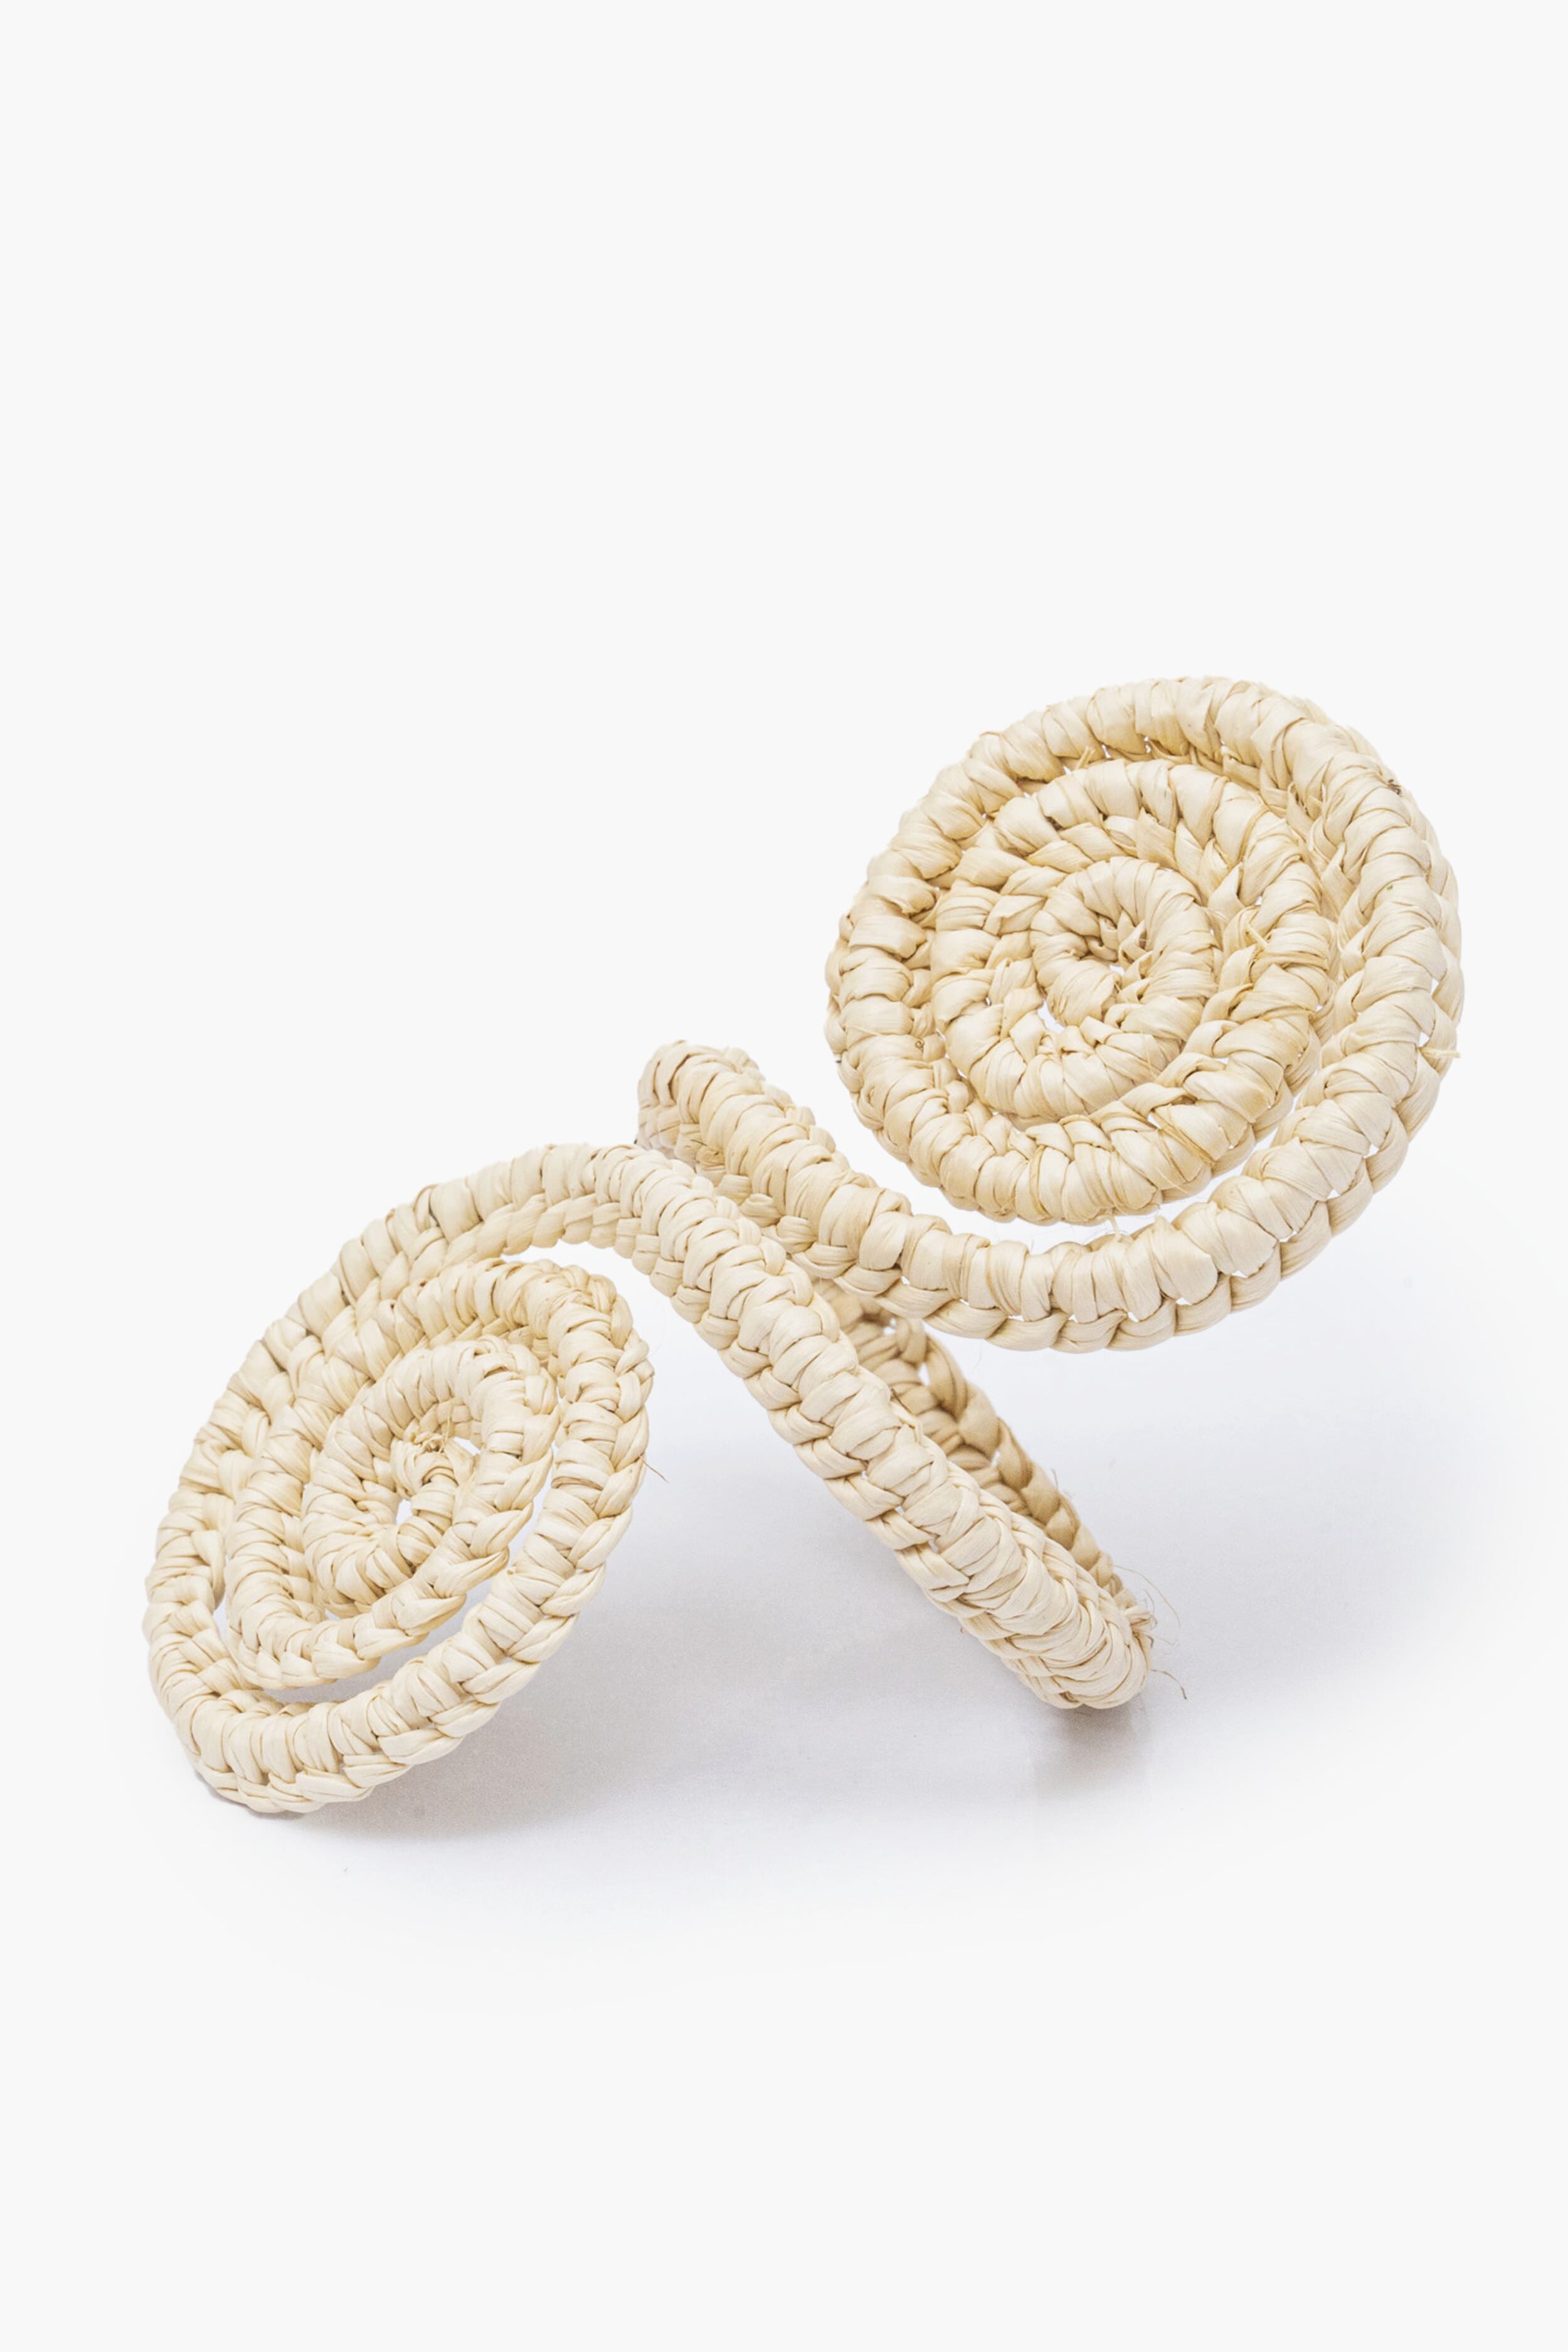 Juliska Woven Napkin Rings, Set of 4, 4 Colors